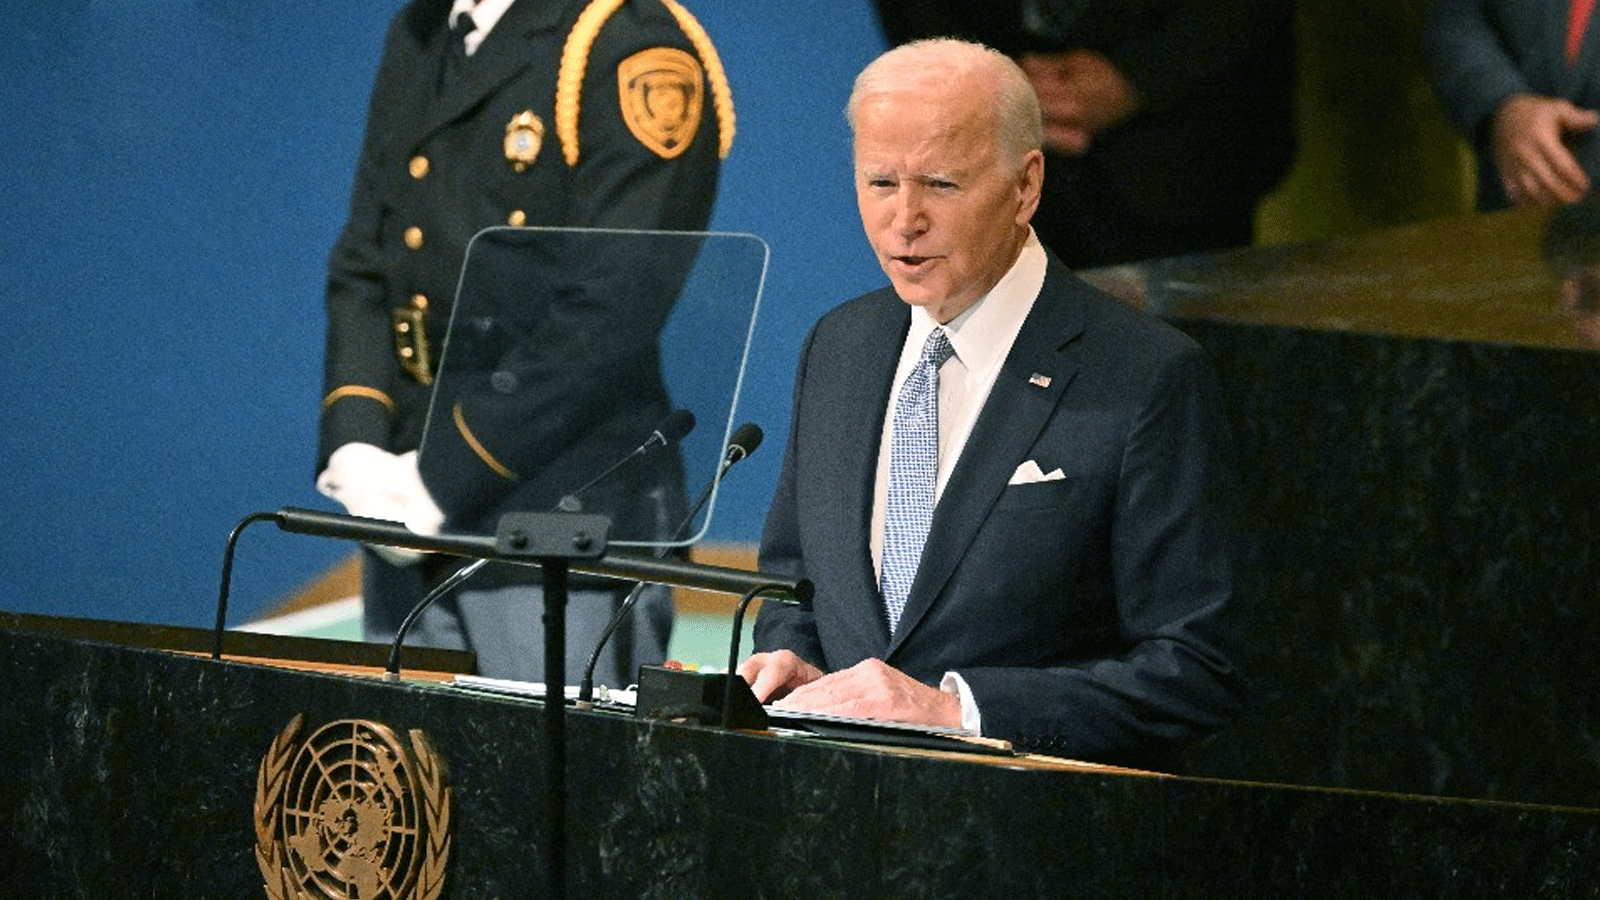 الرئيس الأميركي جو بايدن يتحدث في الجمعية العامة للأمم المتحدة